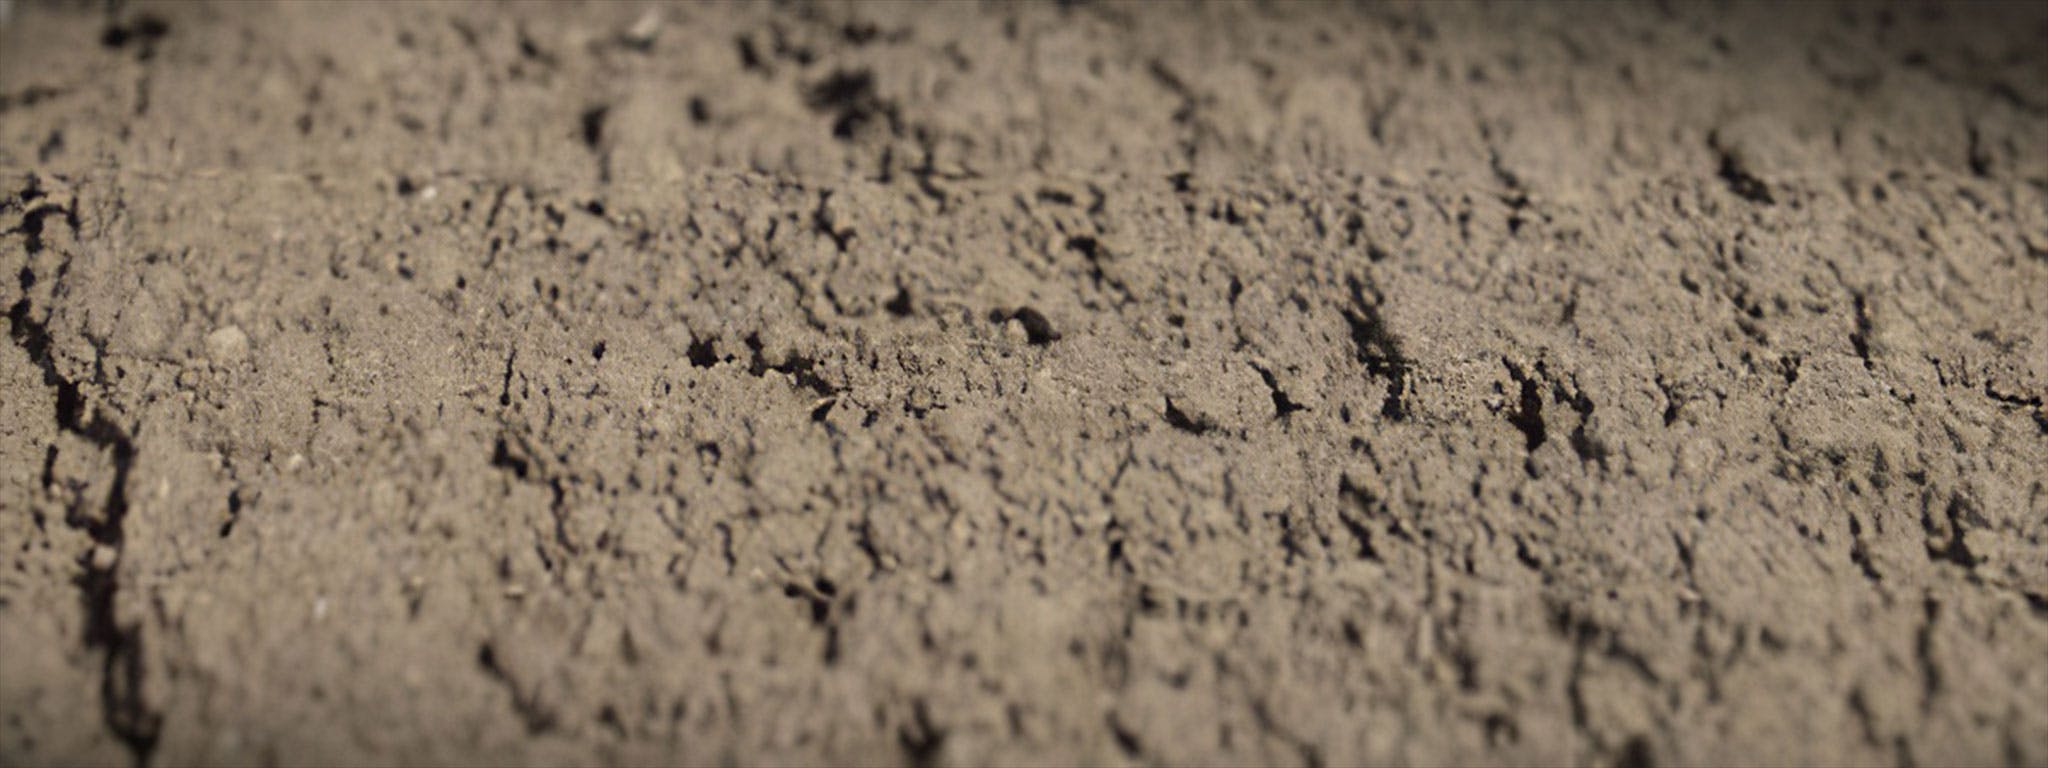 Dirt, Dust & Debris Footage